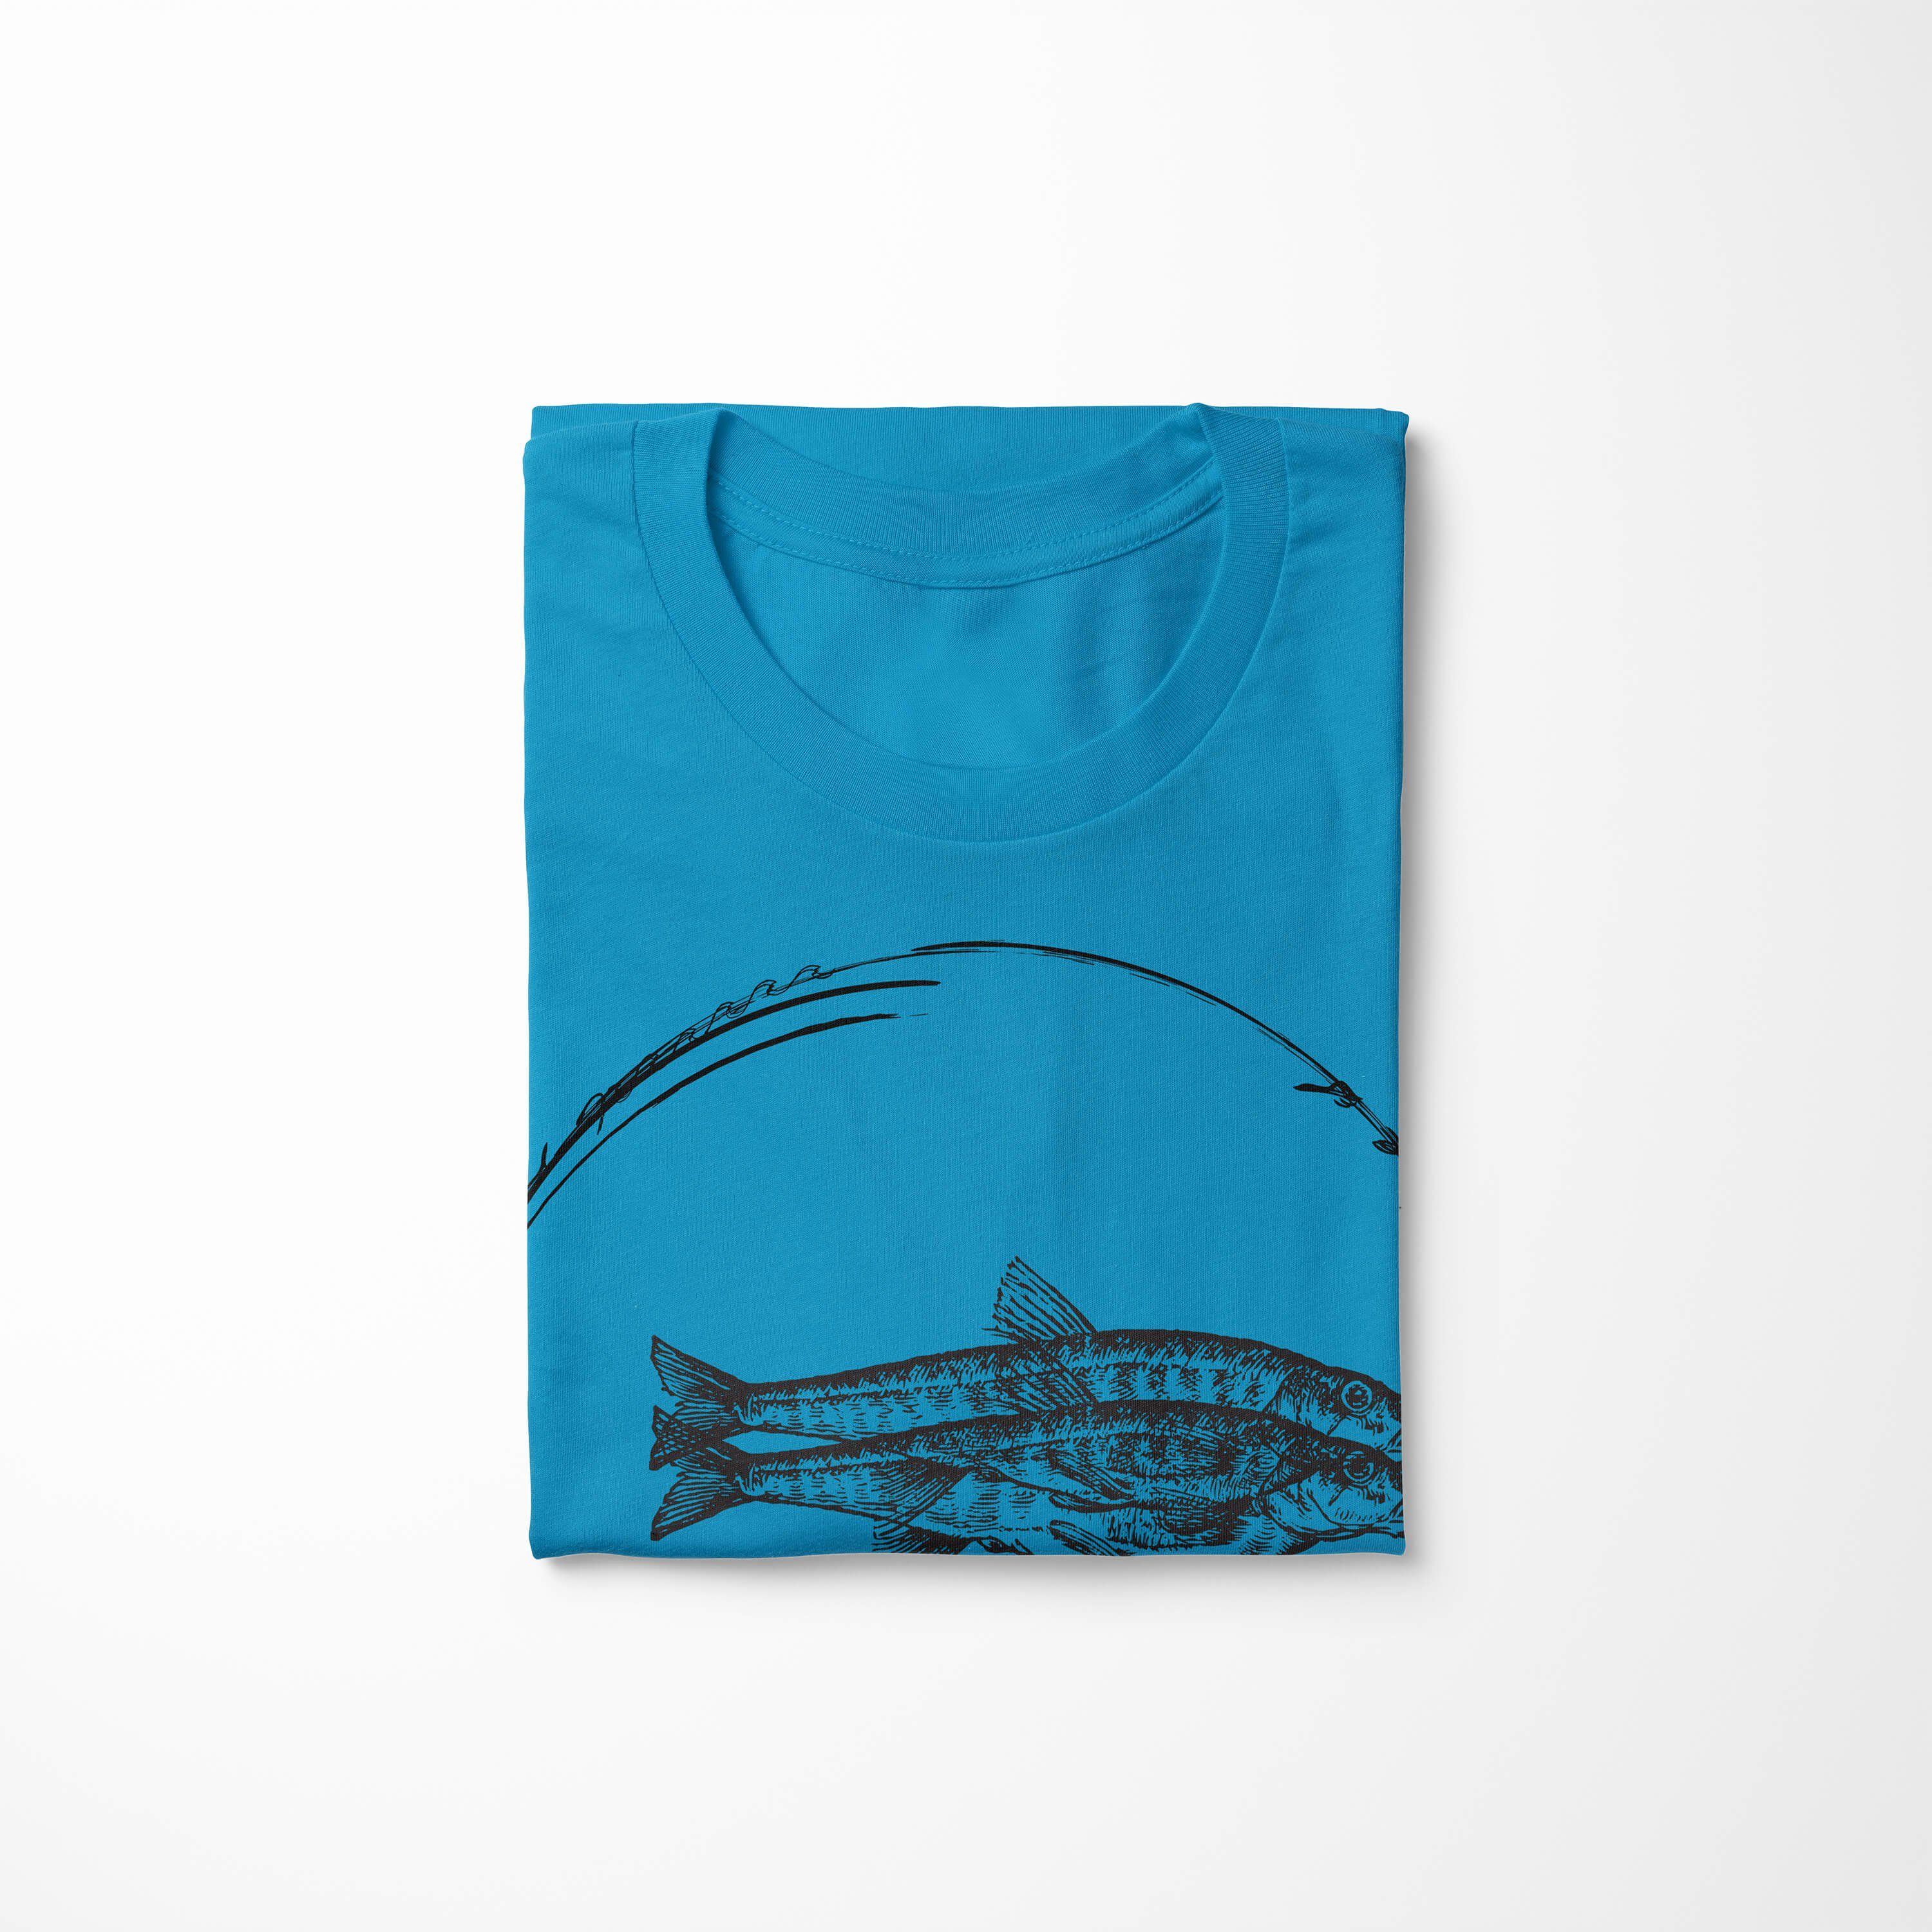 Serie: Sea und Schnitt Creatures, Sinus 059 T-Shirt sportlicher Struktur Sea - Tiefsee feine Art T-Shirt Atoll / Fische